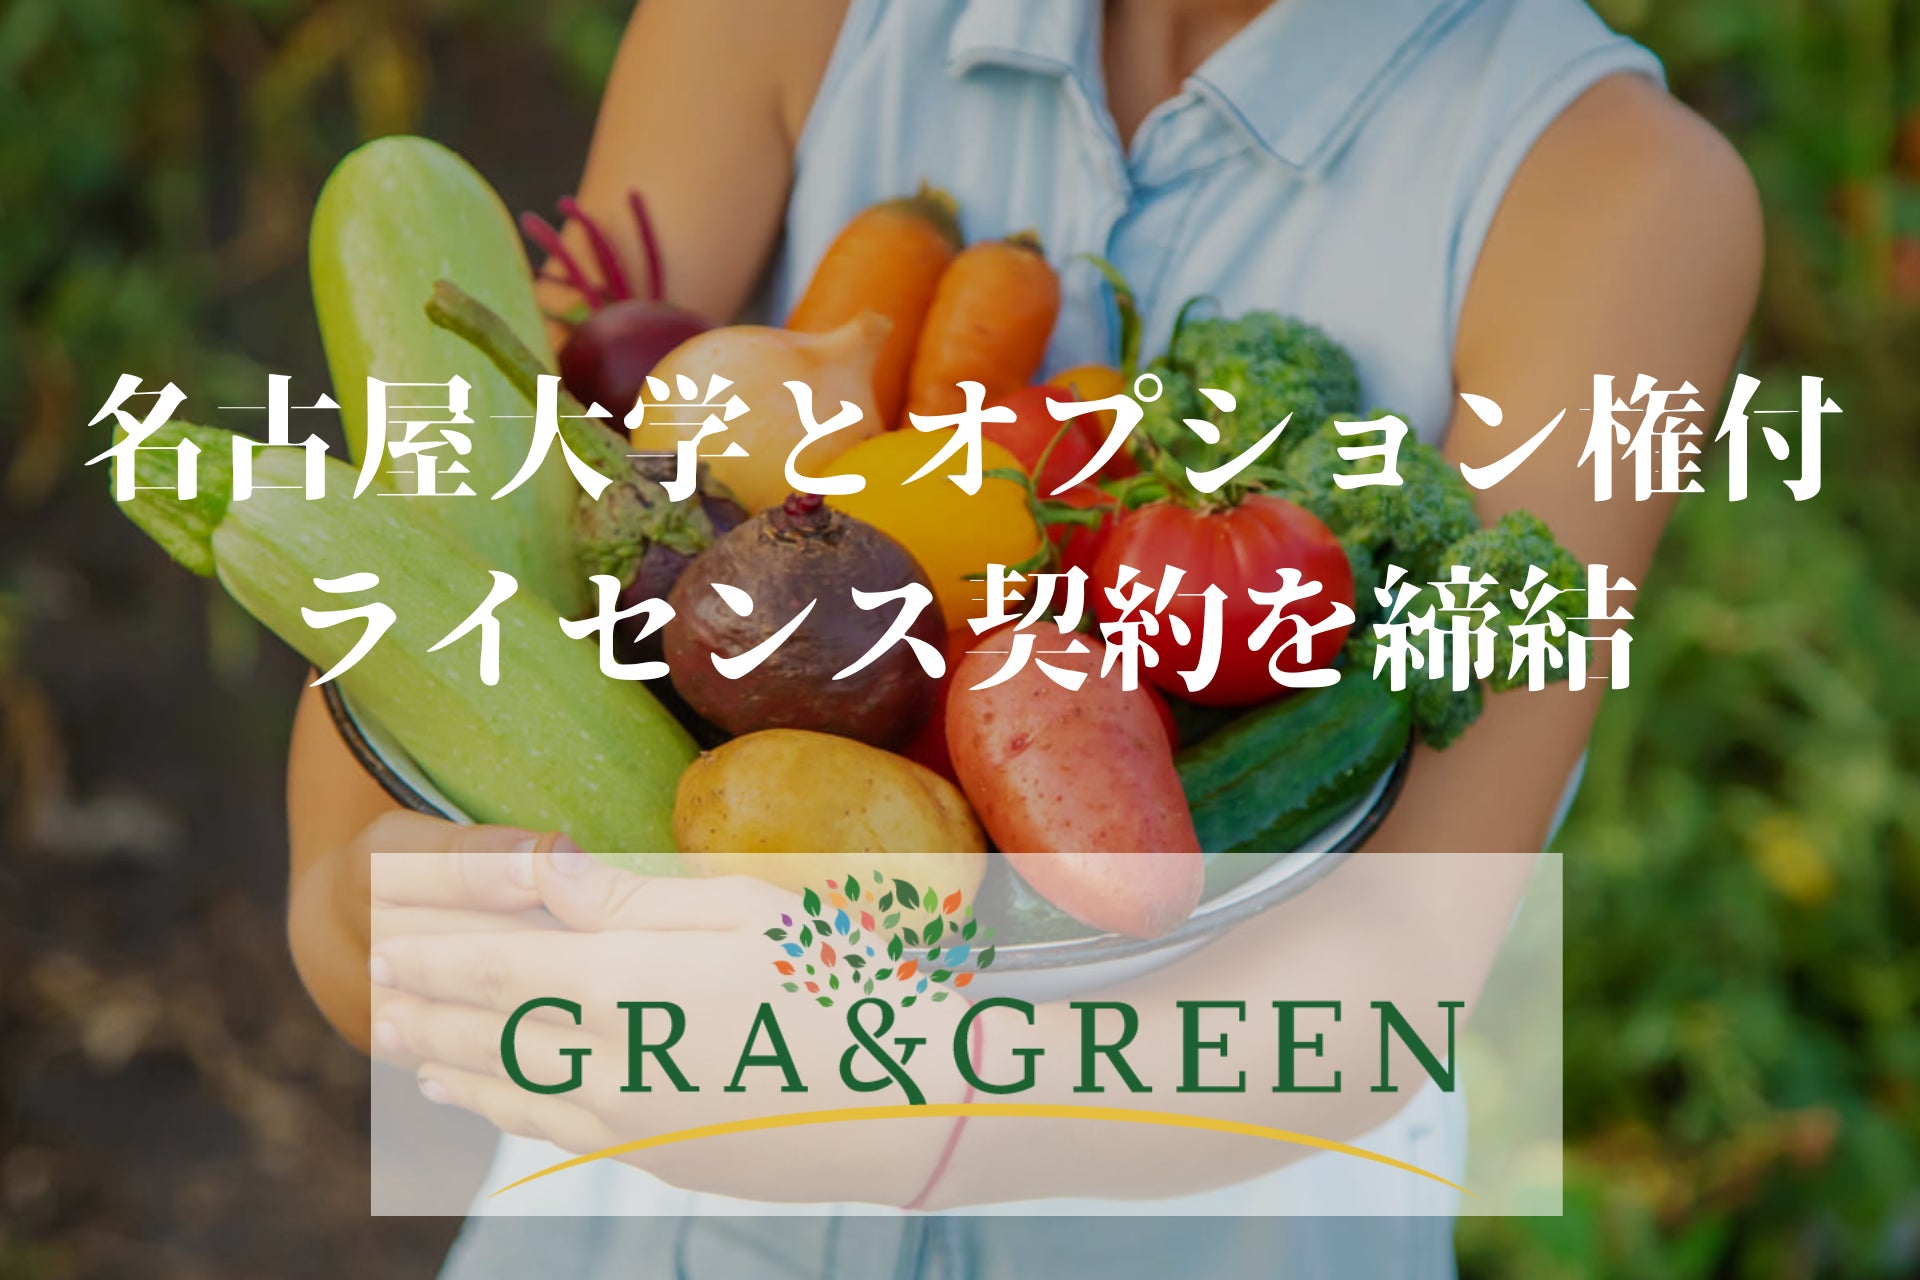 名古屋大学が開発した植物への遺伝子導入技術関連特許に関して、オプション権付きライセンスを取得のサブ画像1